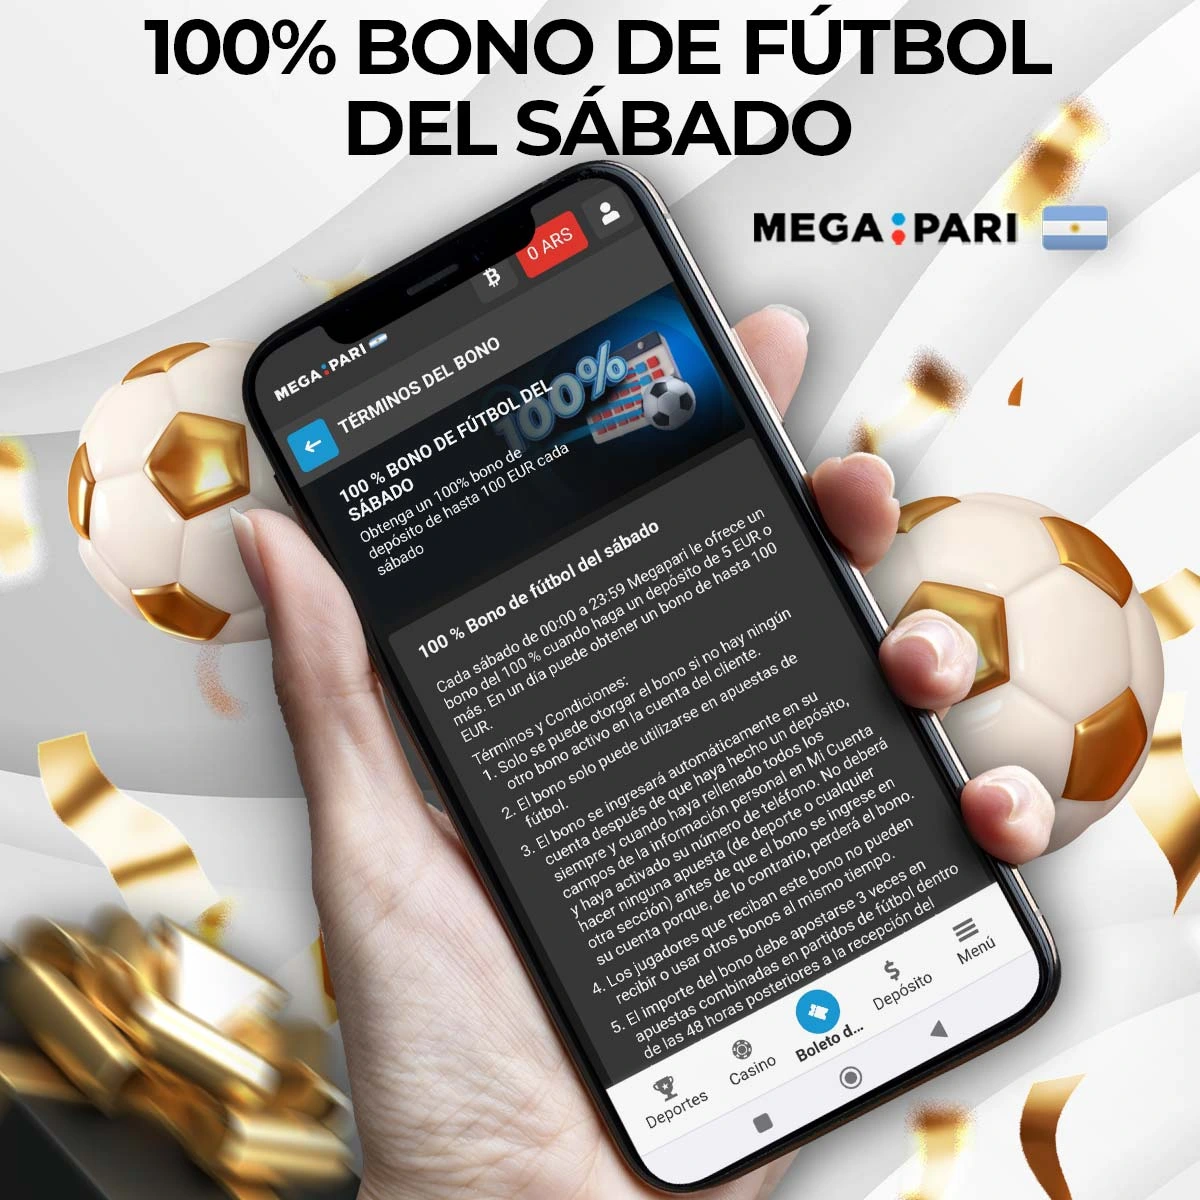 Revisión del bono del sábado de fútbol de Megapari